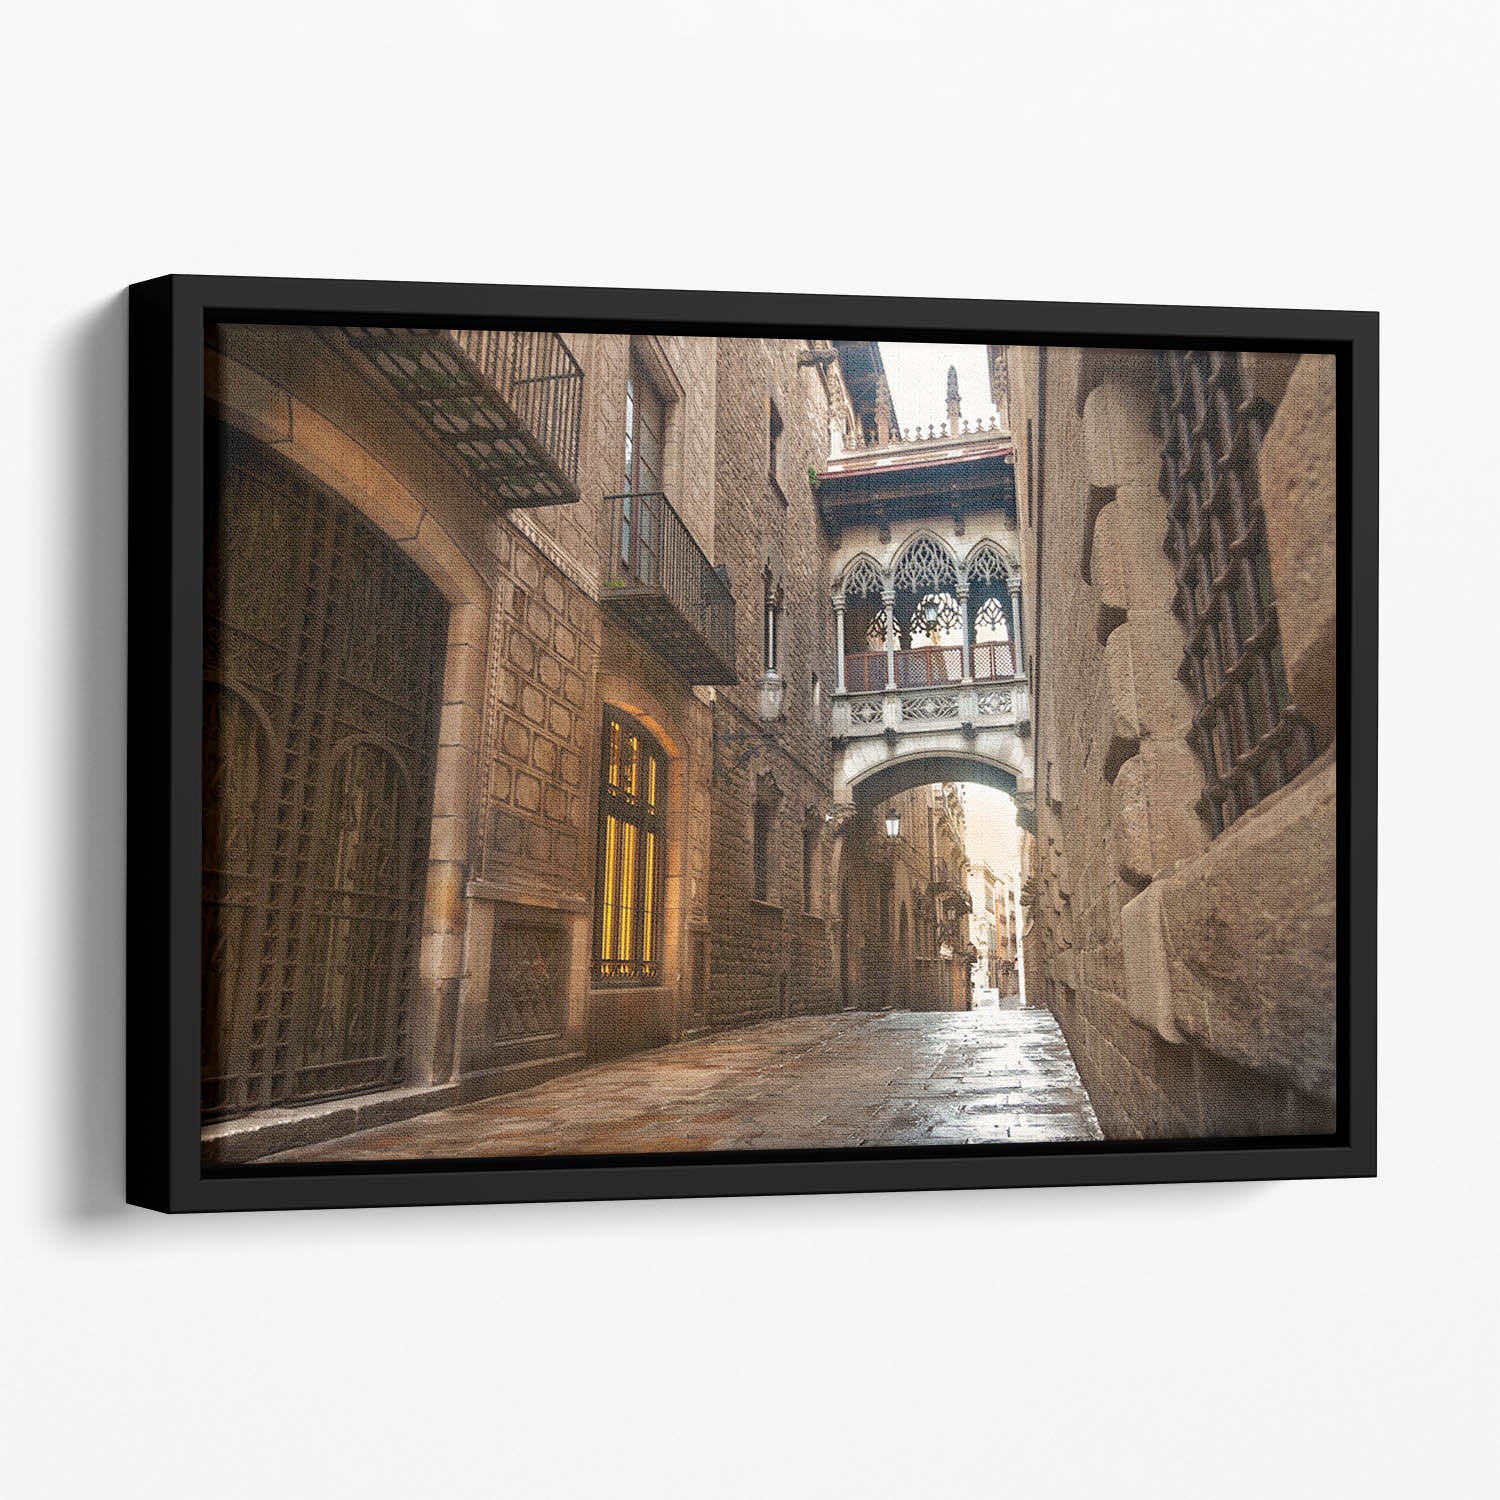 Barcelona Gothic quarter Carrer del Bisbe Floating Framed Canvas